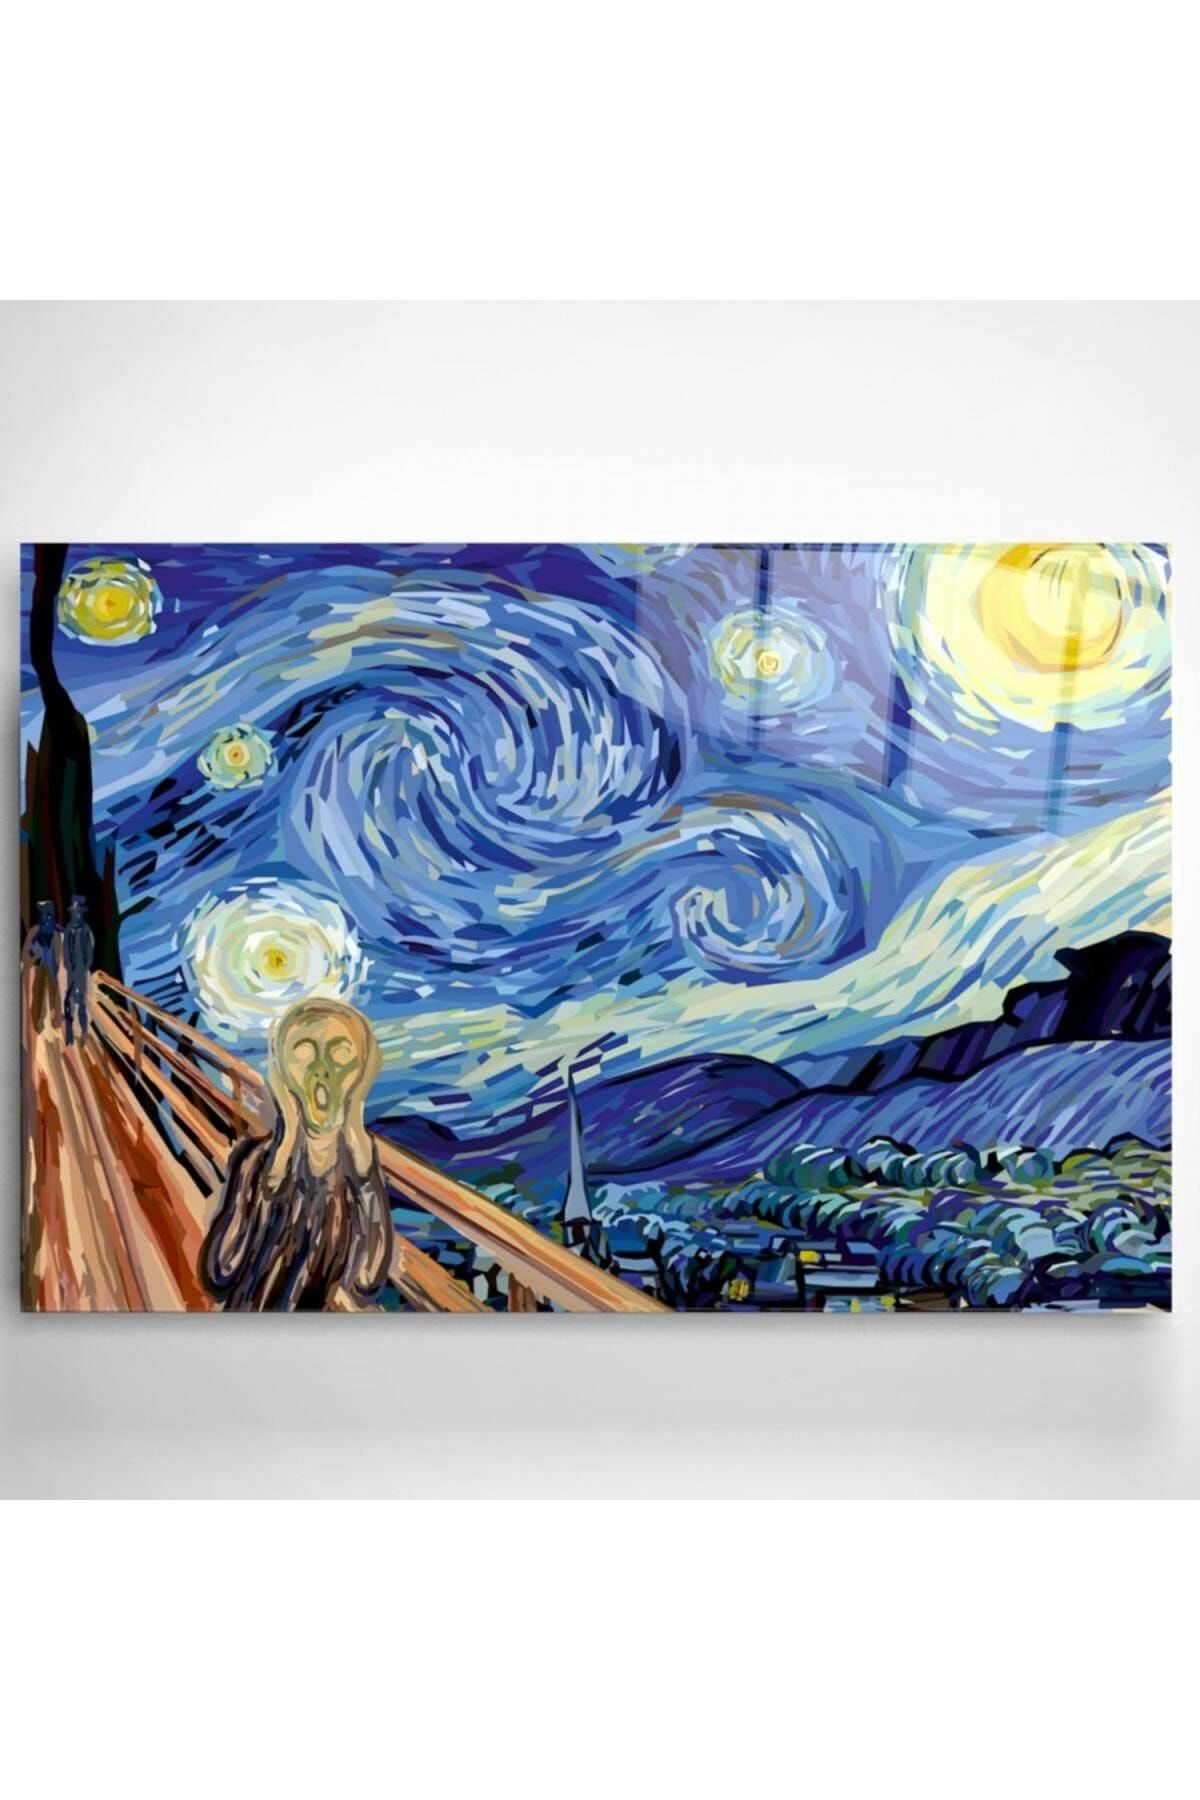 Genel Markalar Digi-art Yıldızlı Gece Vincent Van Gogh Cam Tablo 60x90